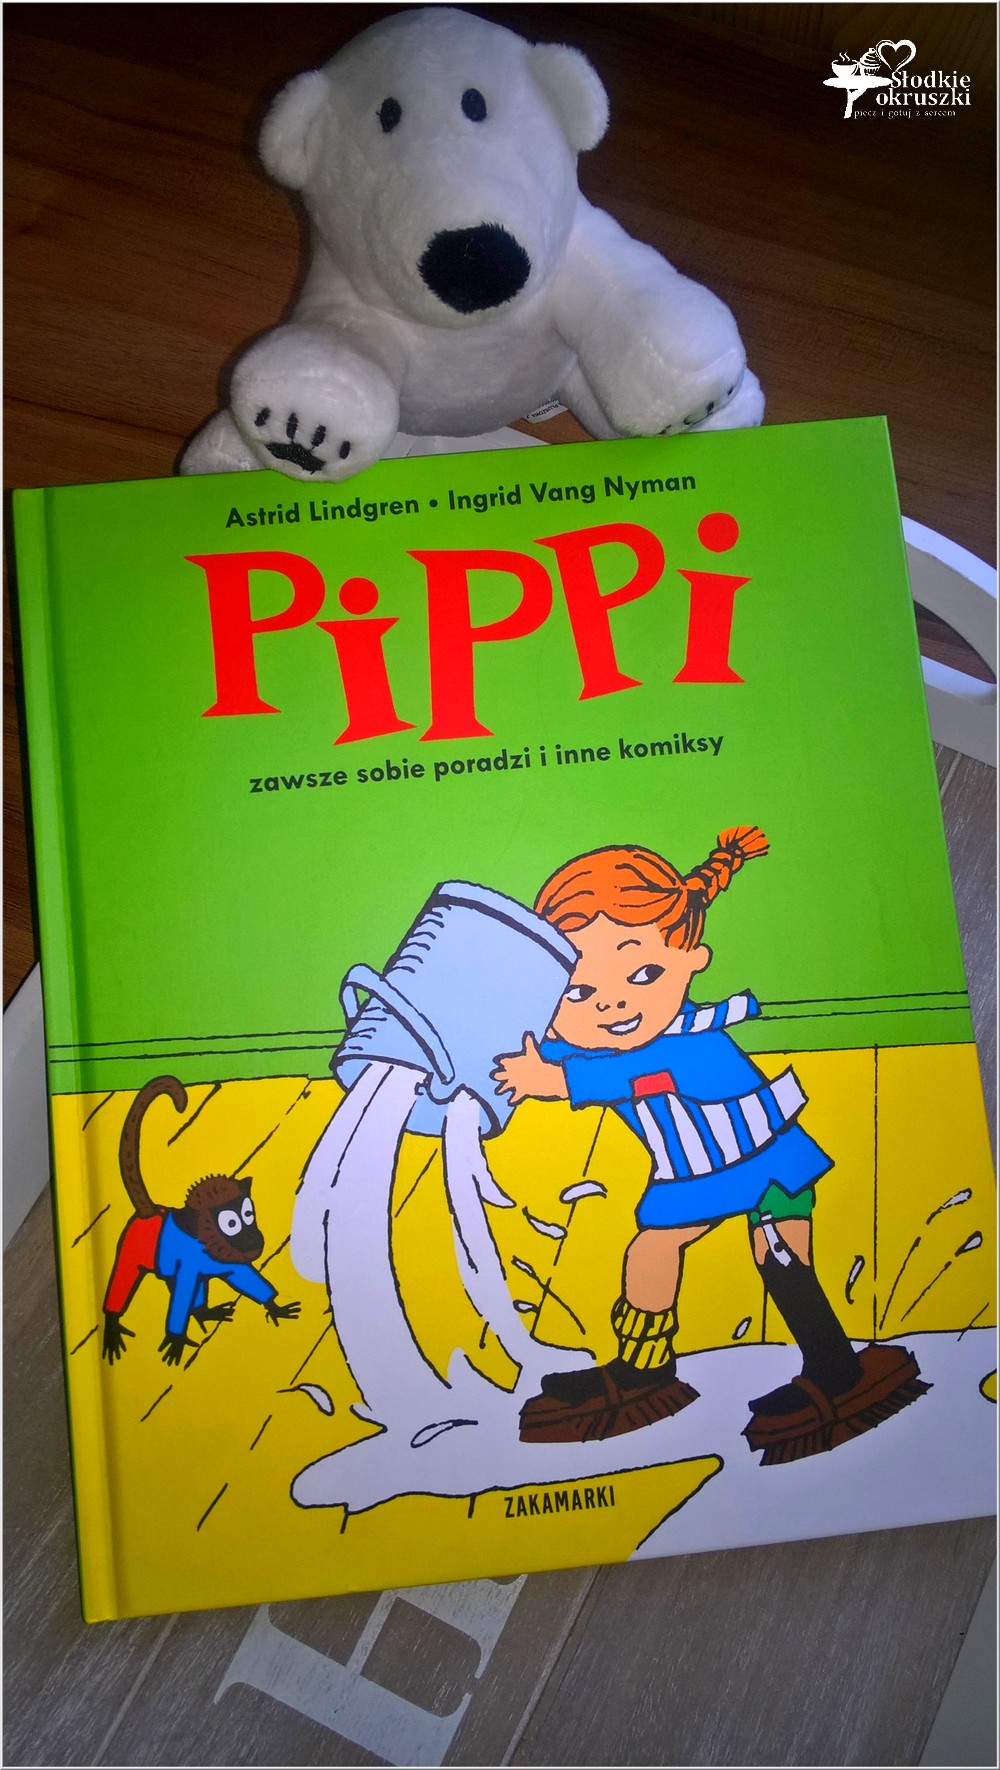 Pippi zawsze sobie poradzi i inne komiksy. Wyd. Zakamarki.